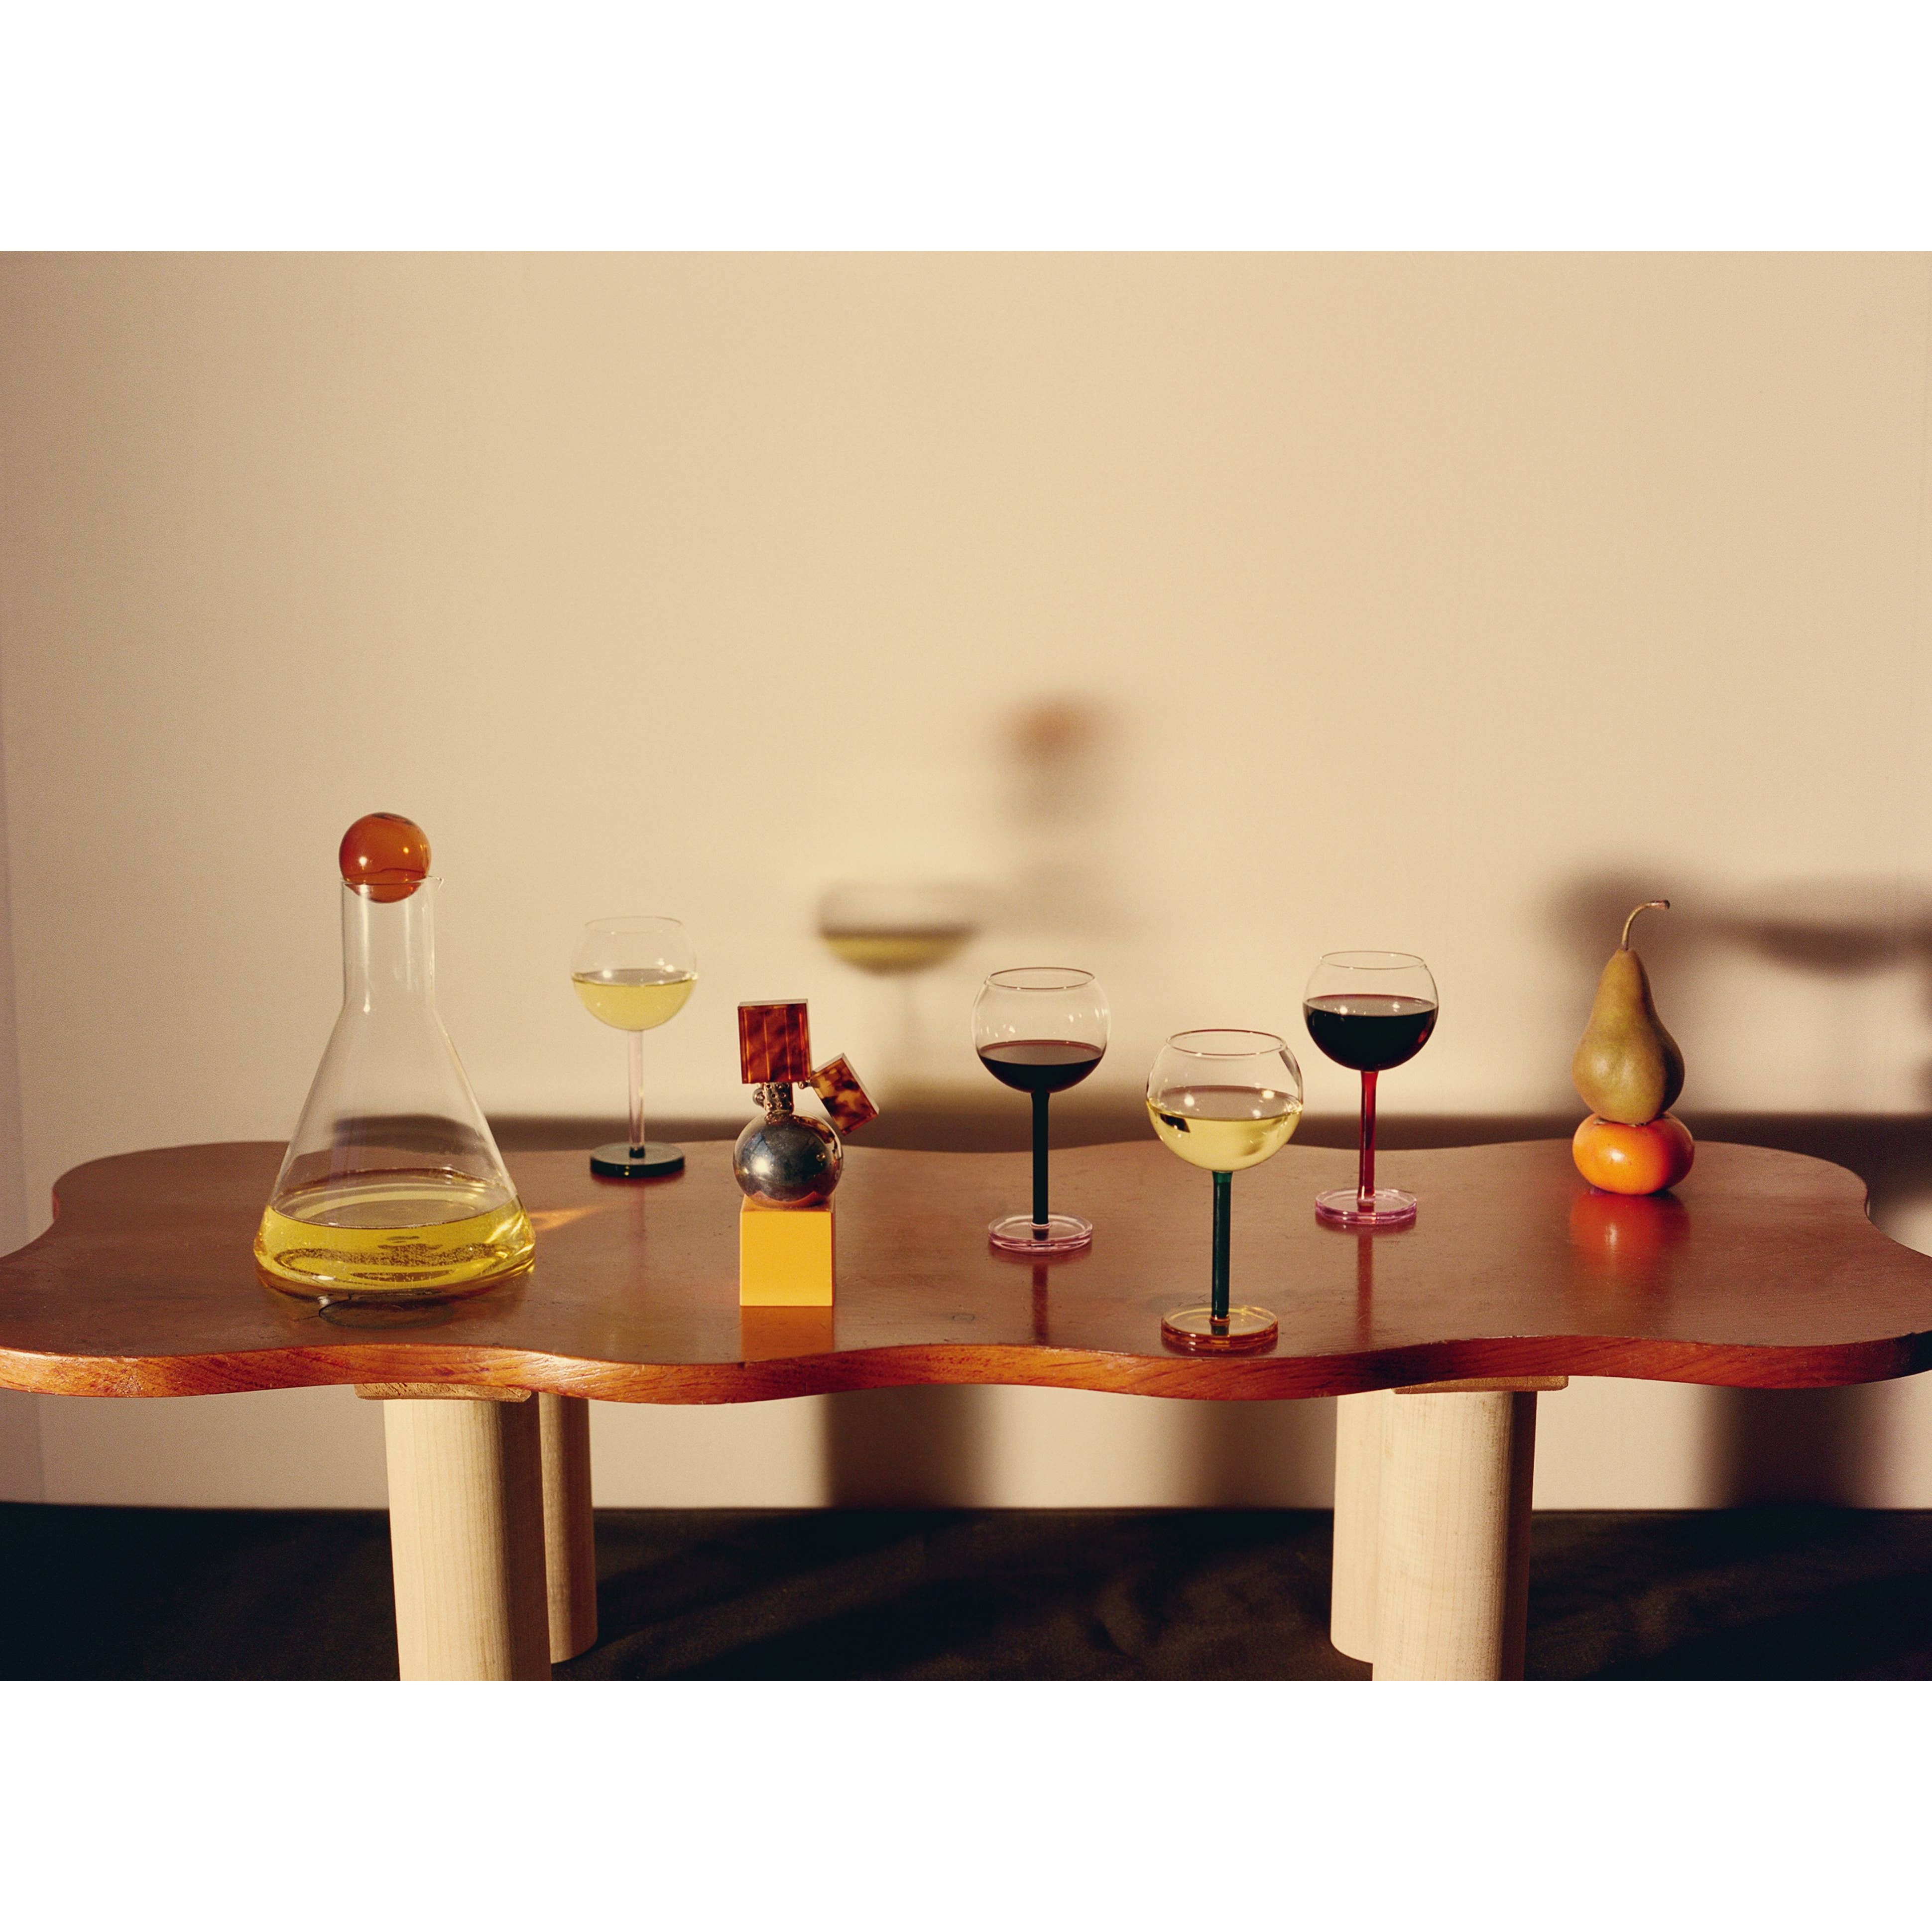 Bilboquet Wine Glasses, Golden Hour